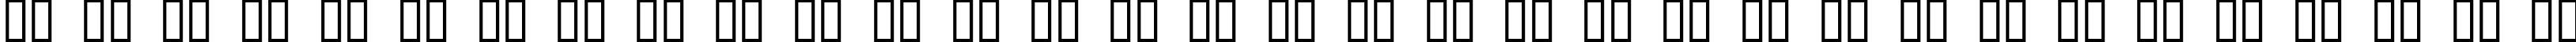 Пример написания русского алфавита шрифтом Douglas Adams Hand